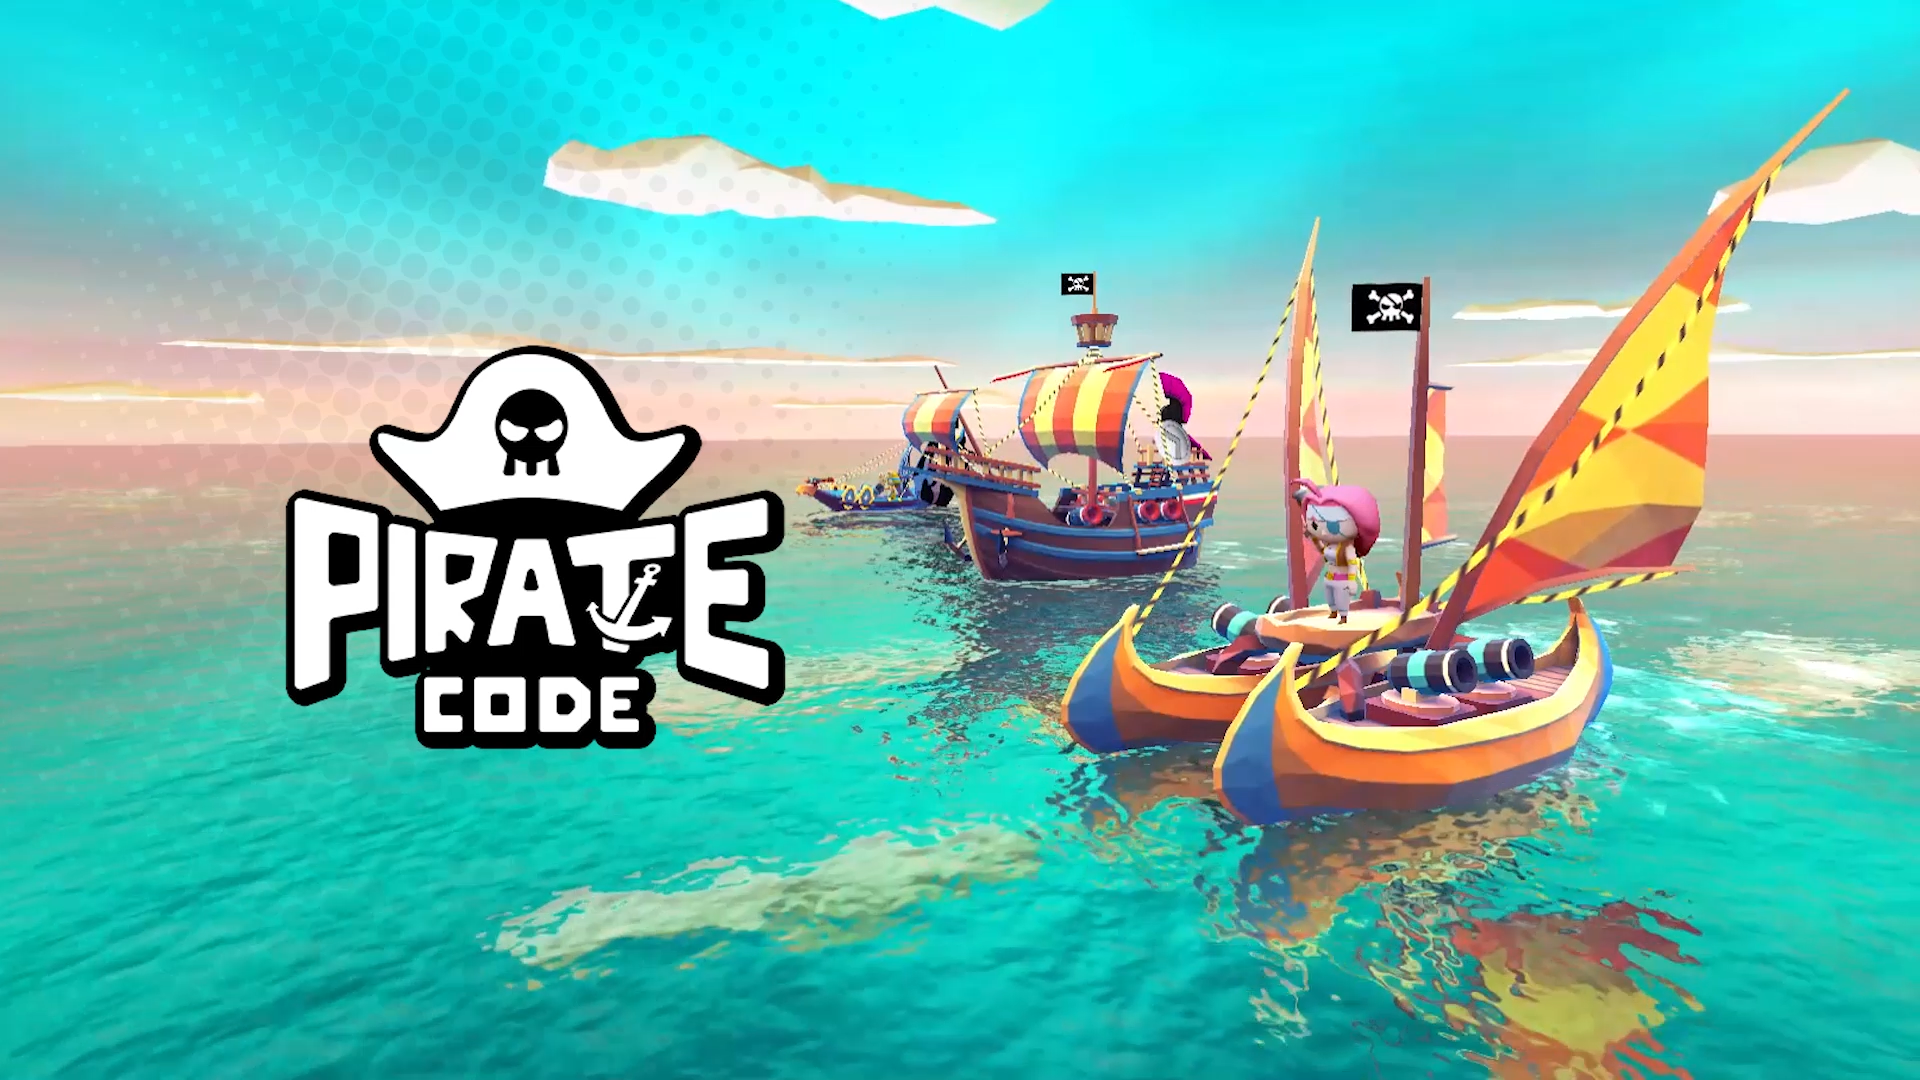 喜提版号 +《海盗法则Pirate Code》获全球推荐